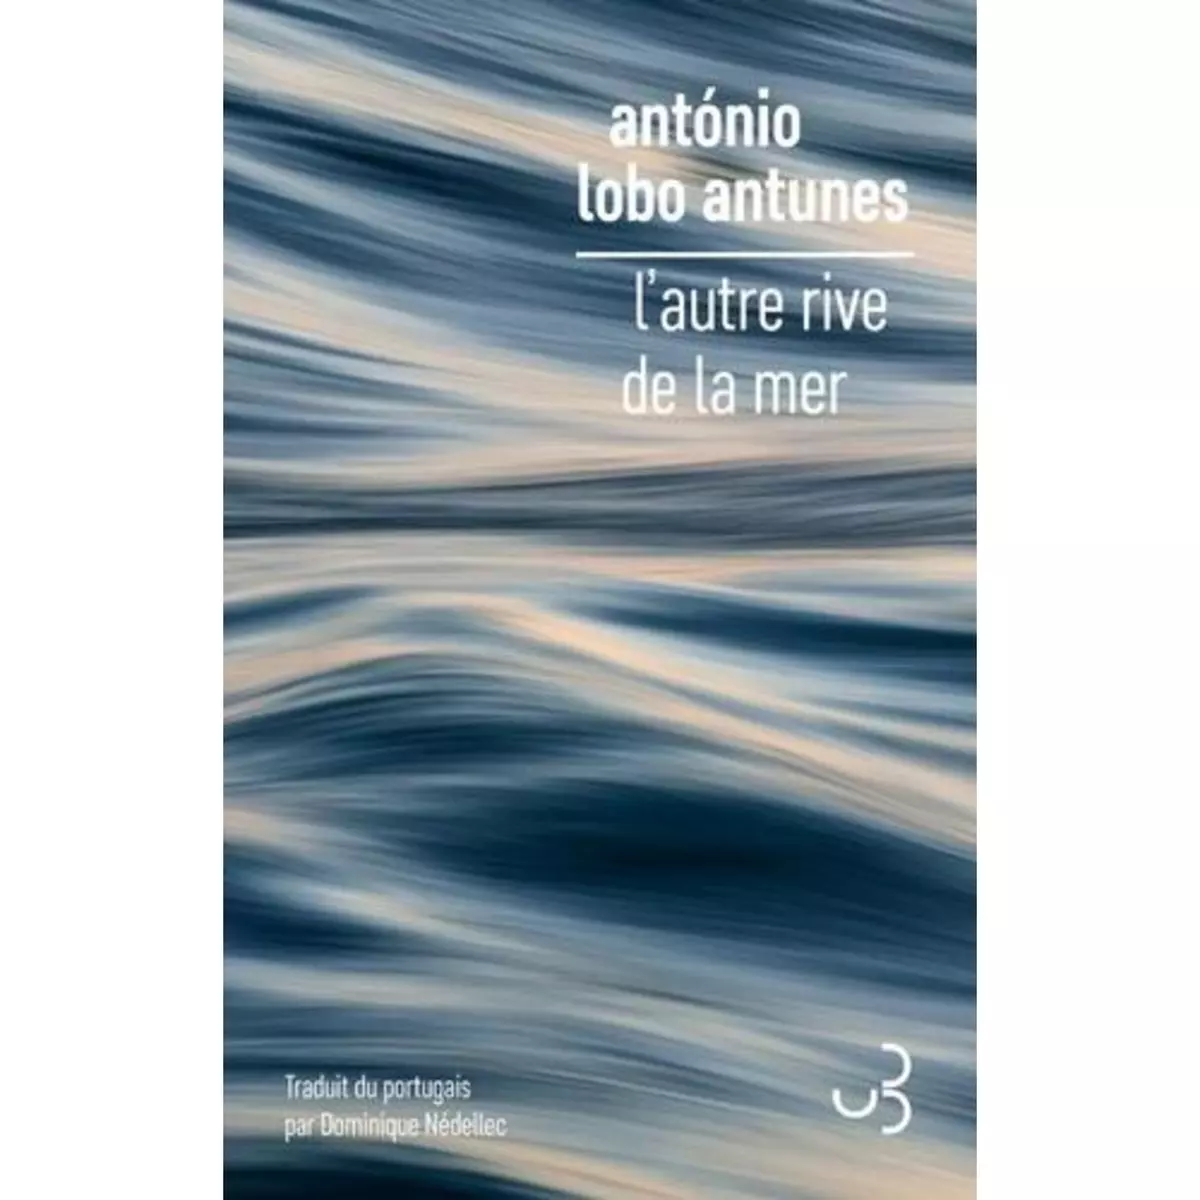  L'AUTRE RIVE DE LA MER, Antunes António Lobo